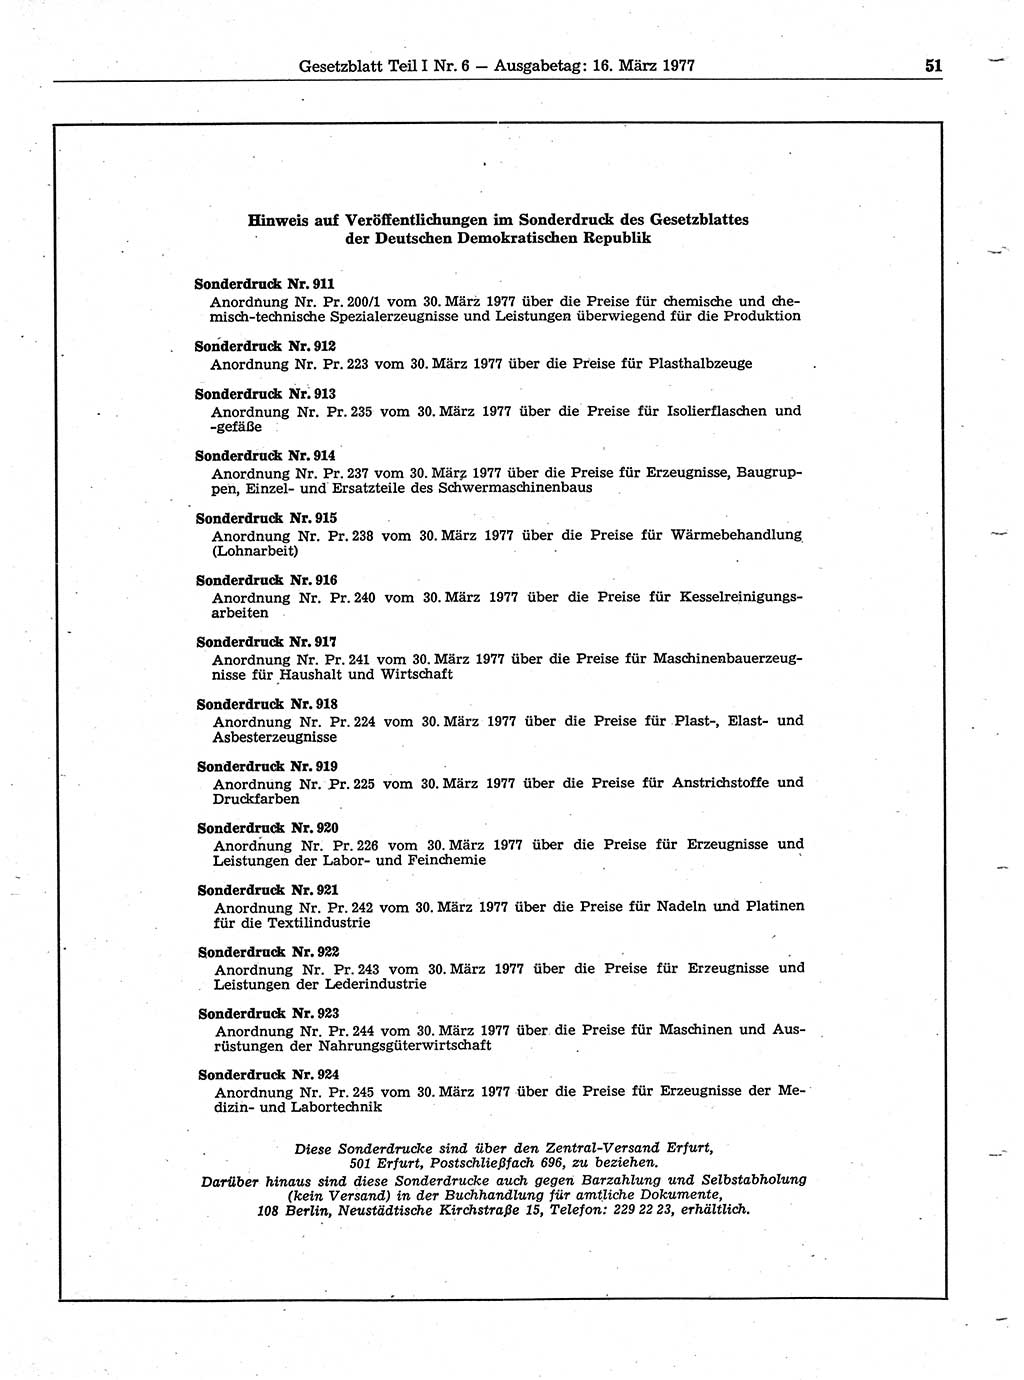 Gesetzblatt (GBl.) der Deutschen Demokratischen Republik (DDR) Teil Ⅰ 1977, Seite 51 (GBl. DDR Ⅰ 1977, S. 51)